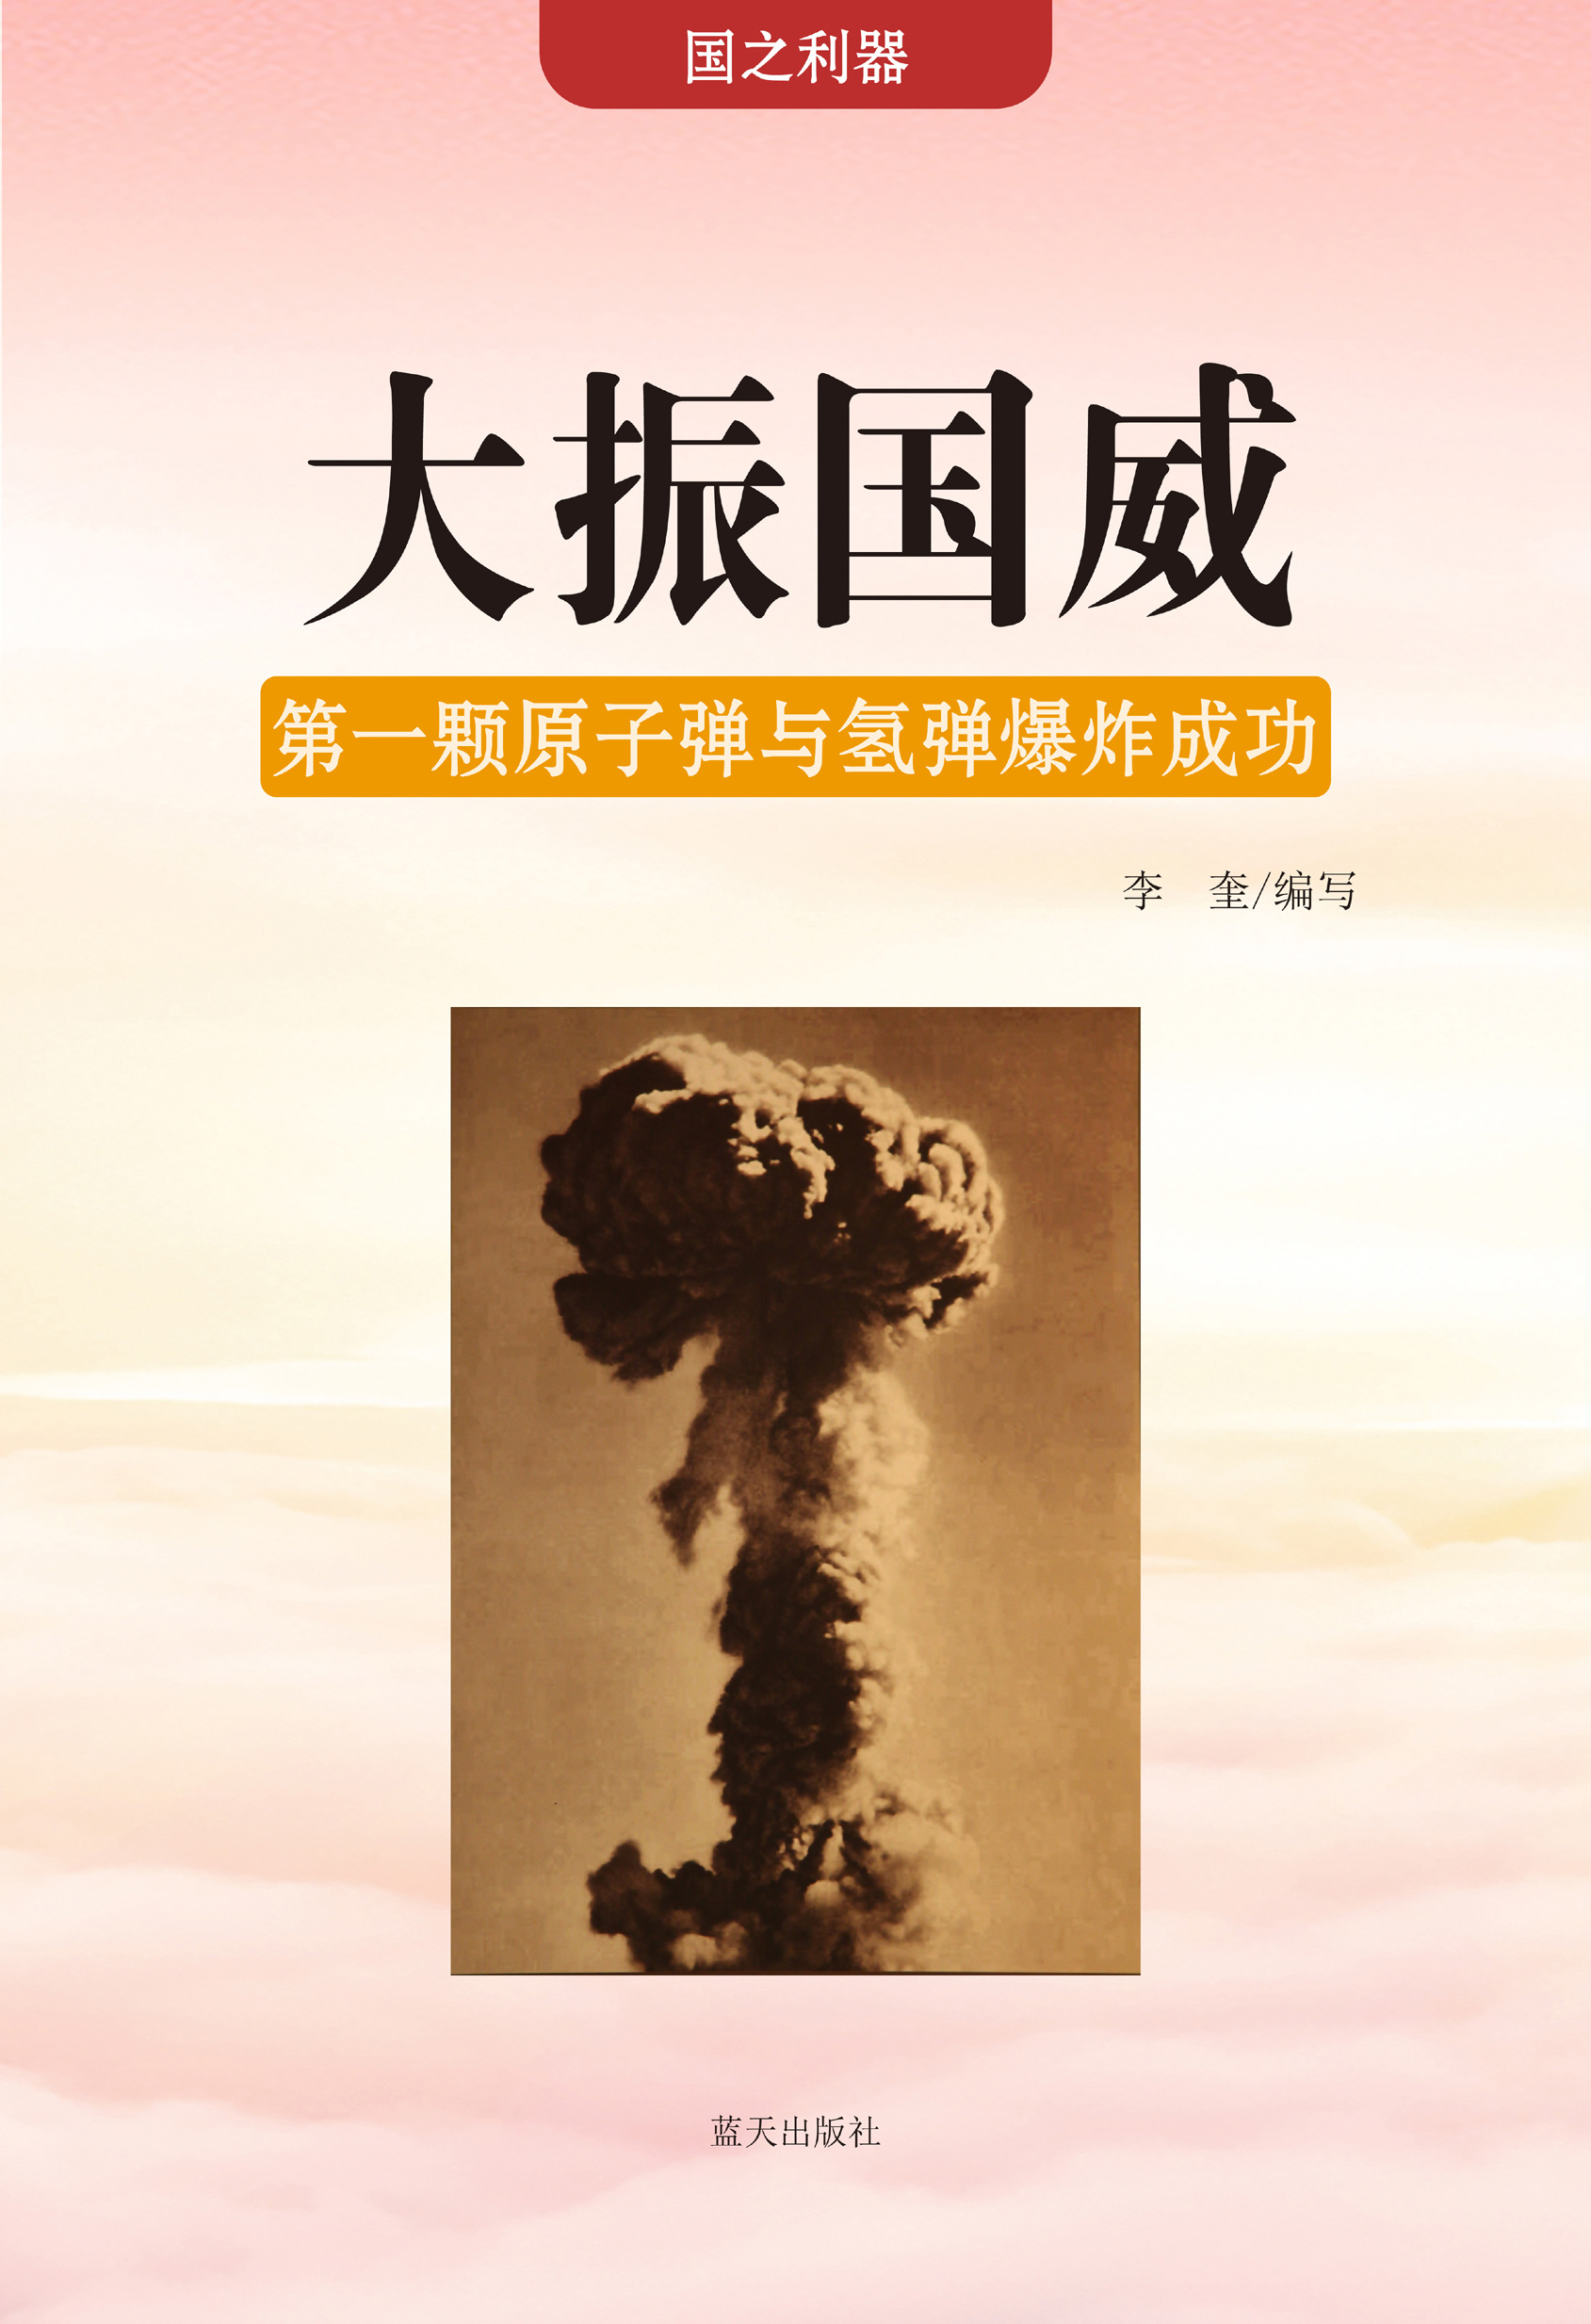 大振国威——第一颗原子弹与氢弹爆炸成功